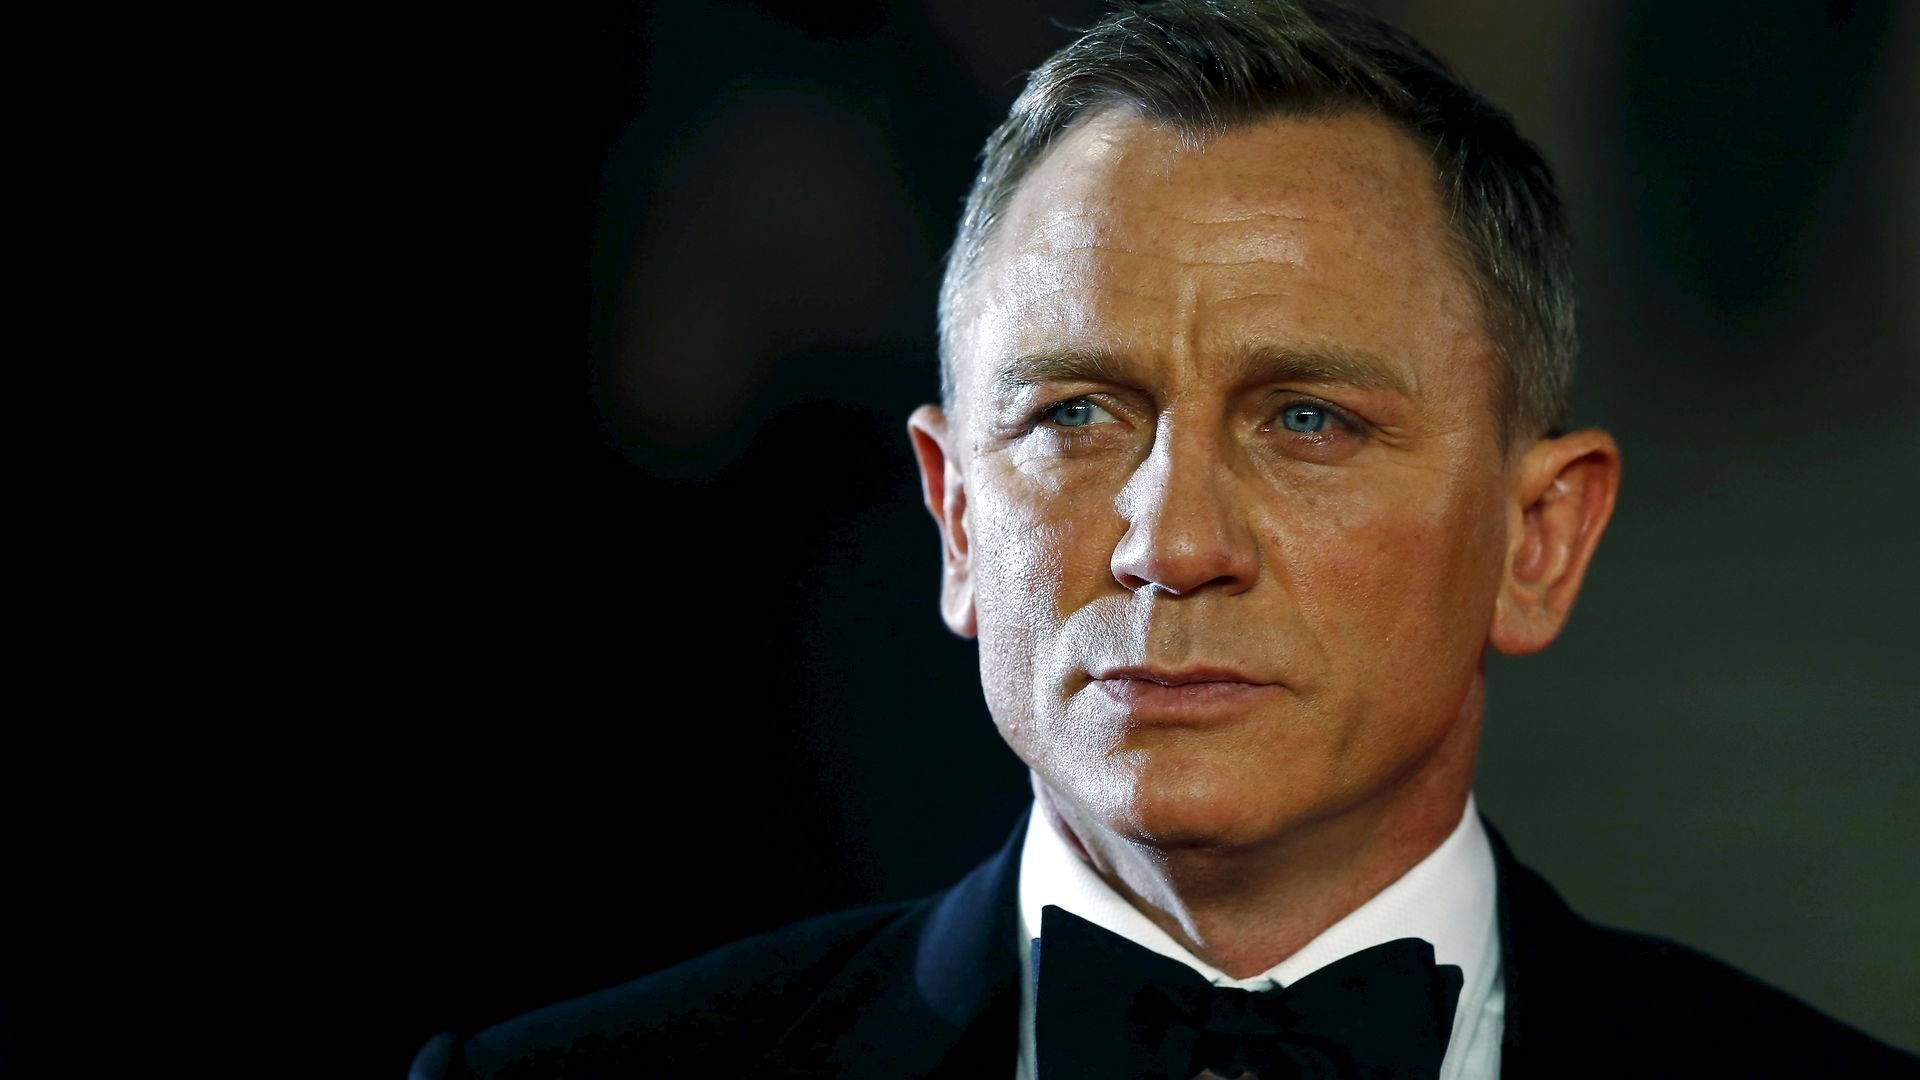 Den såkaldte "Vesper" spillede en klar rolle i skuespilleren Daniel Craigs første omgang som James Bond i forbindelse med Casino Royale i 2006. (ARKIV) | Foto: Luke Macgregor/Reuters/Ritzau Scanpix